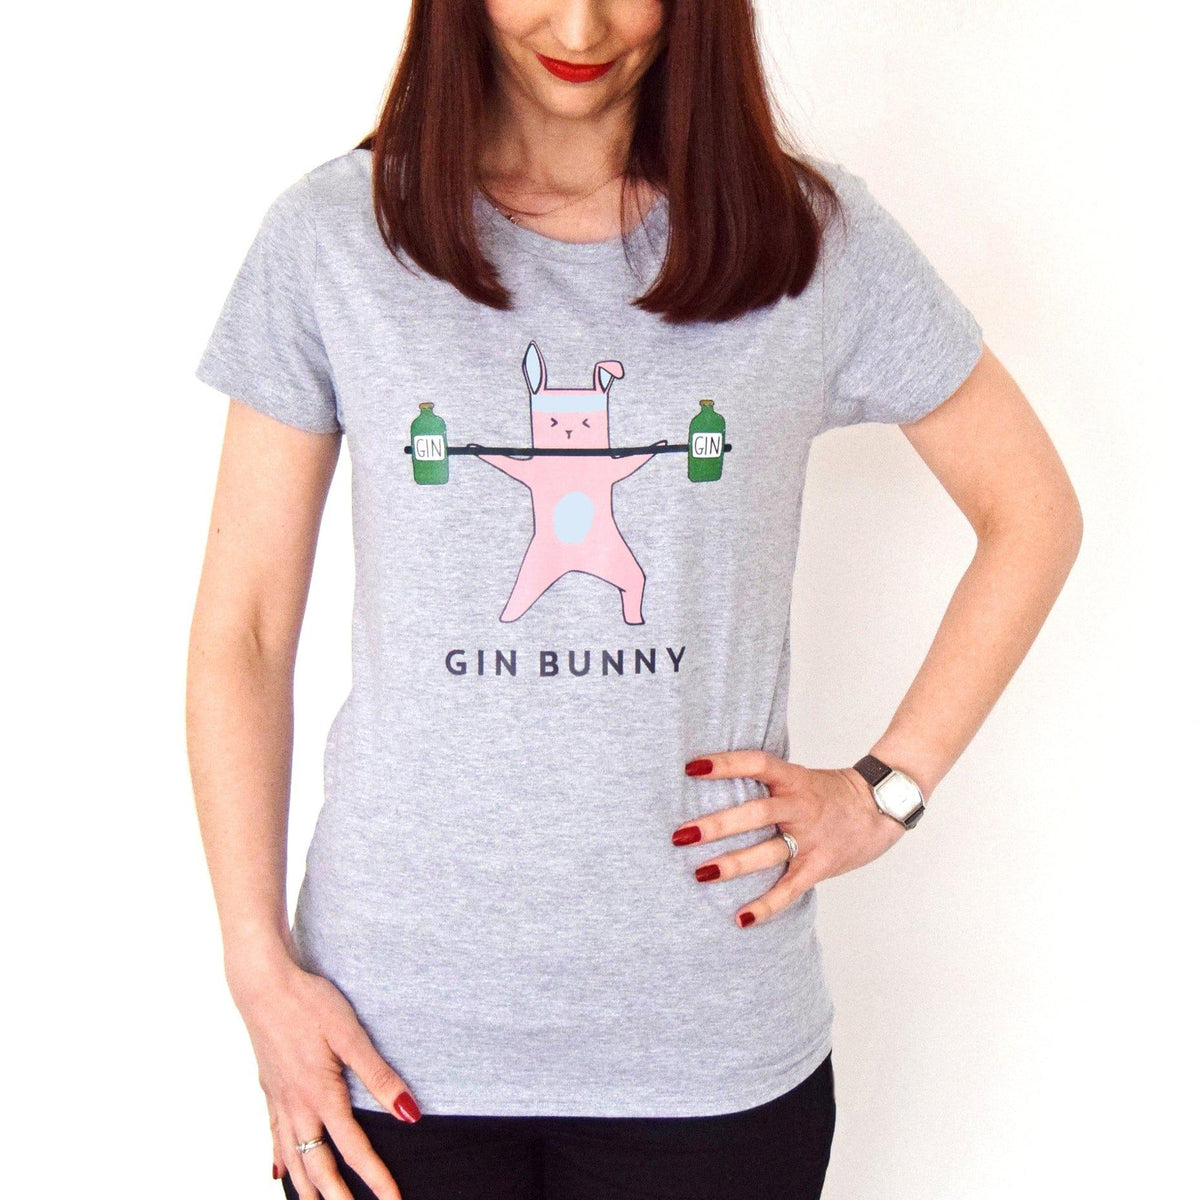 'Gin Bunny' Women's T-Shirt T-Shirt Of Life & Lemons 